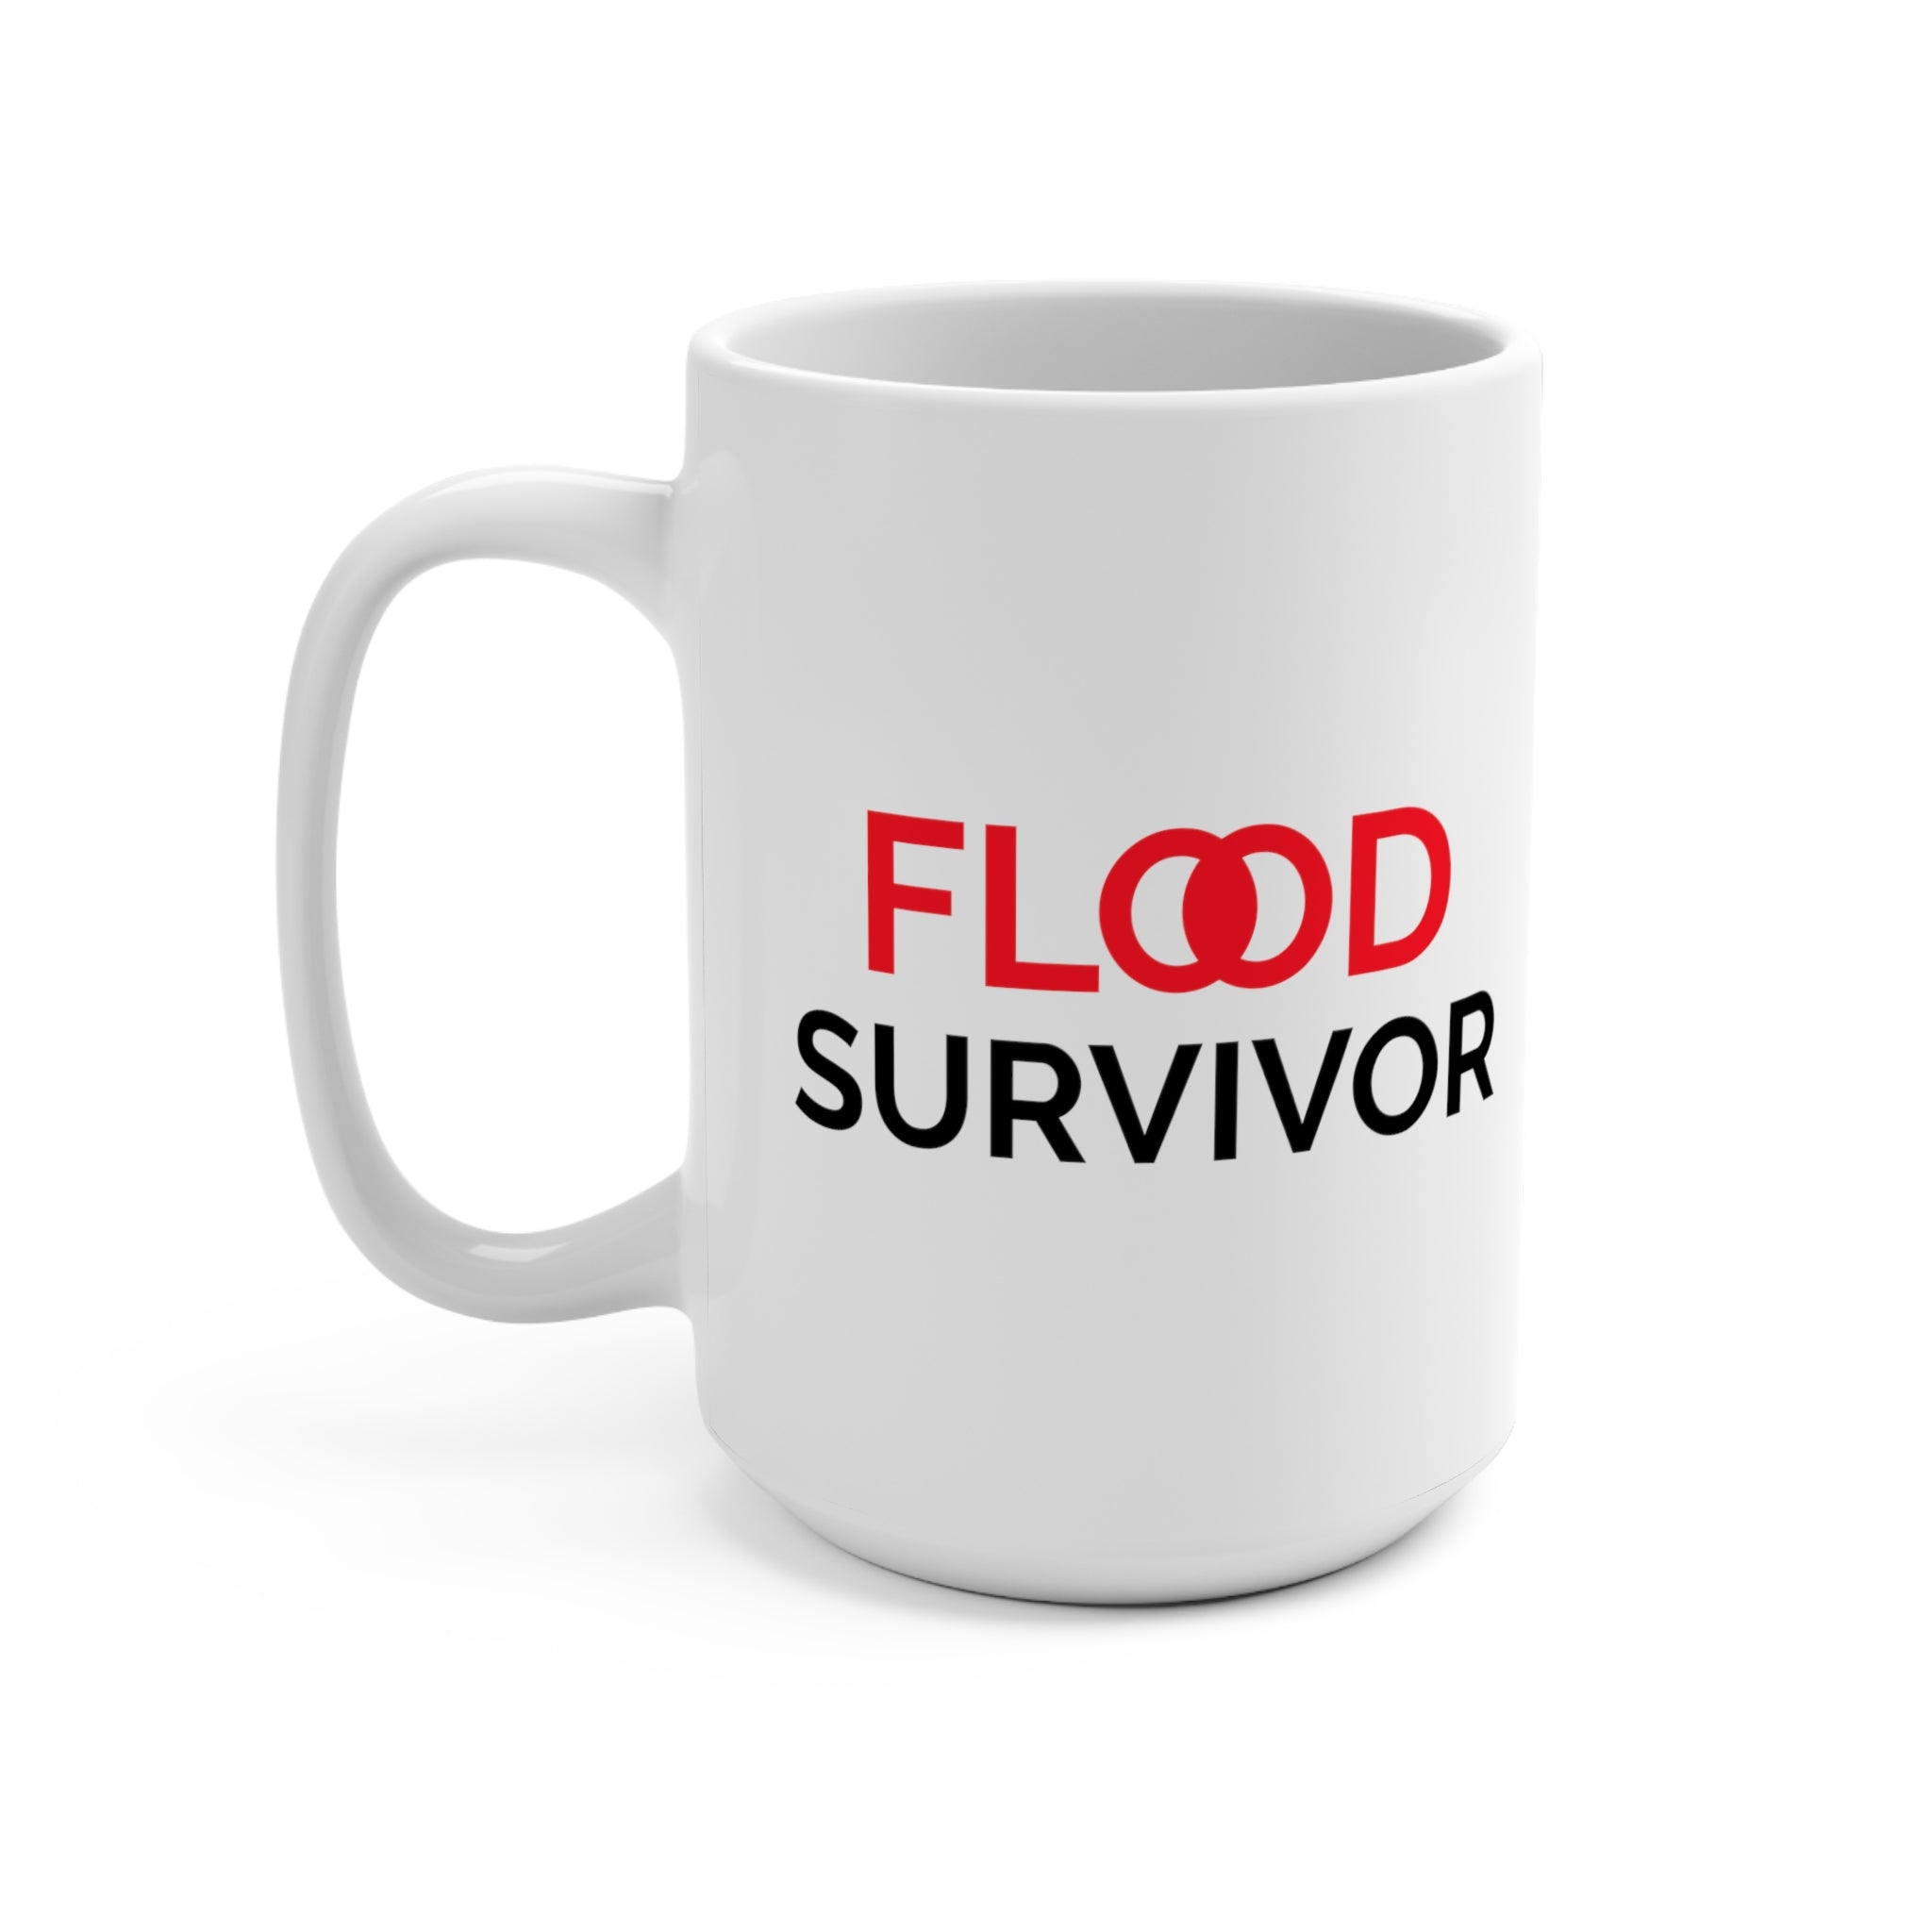 Flood Survivor